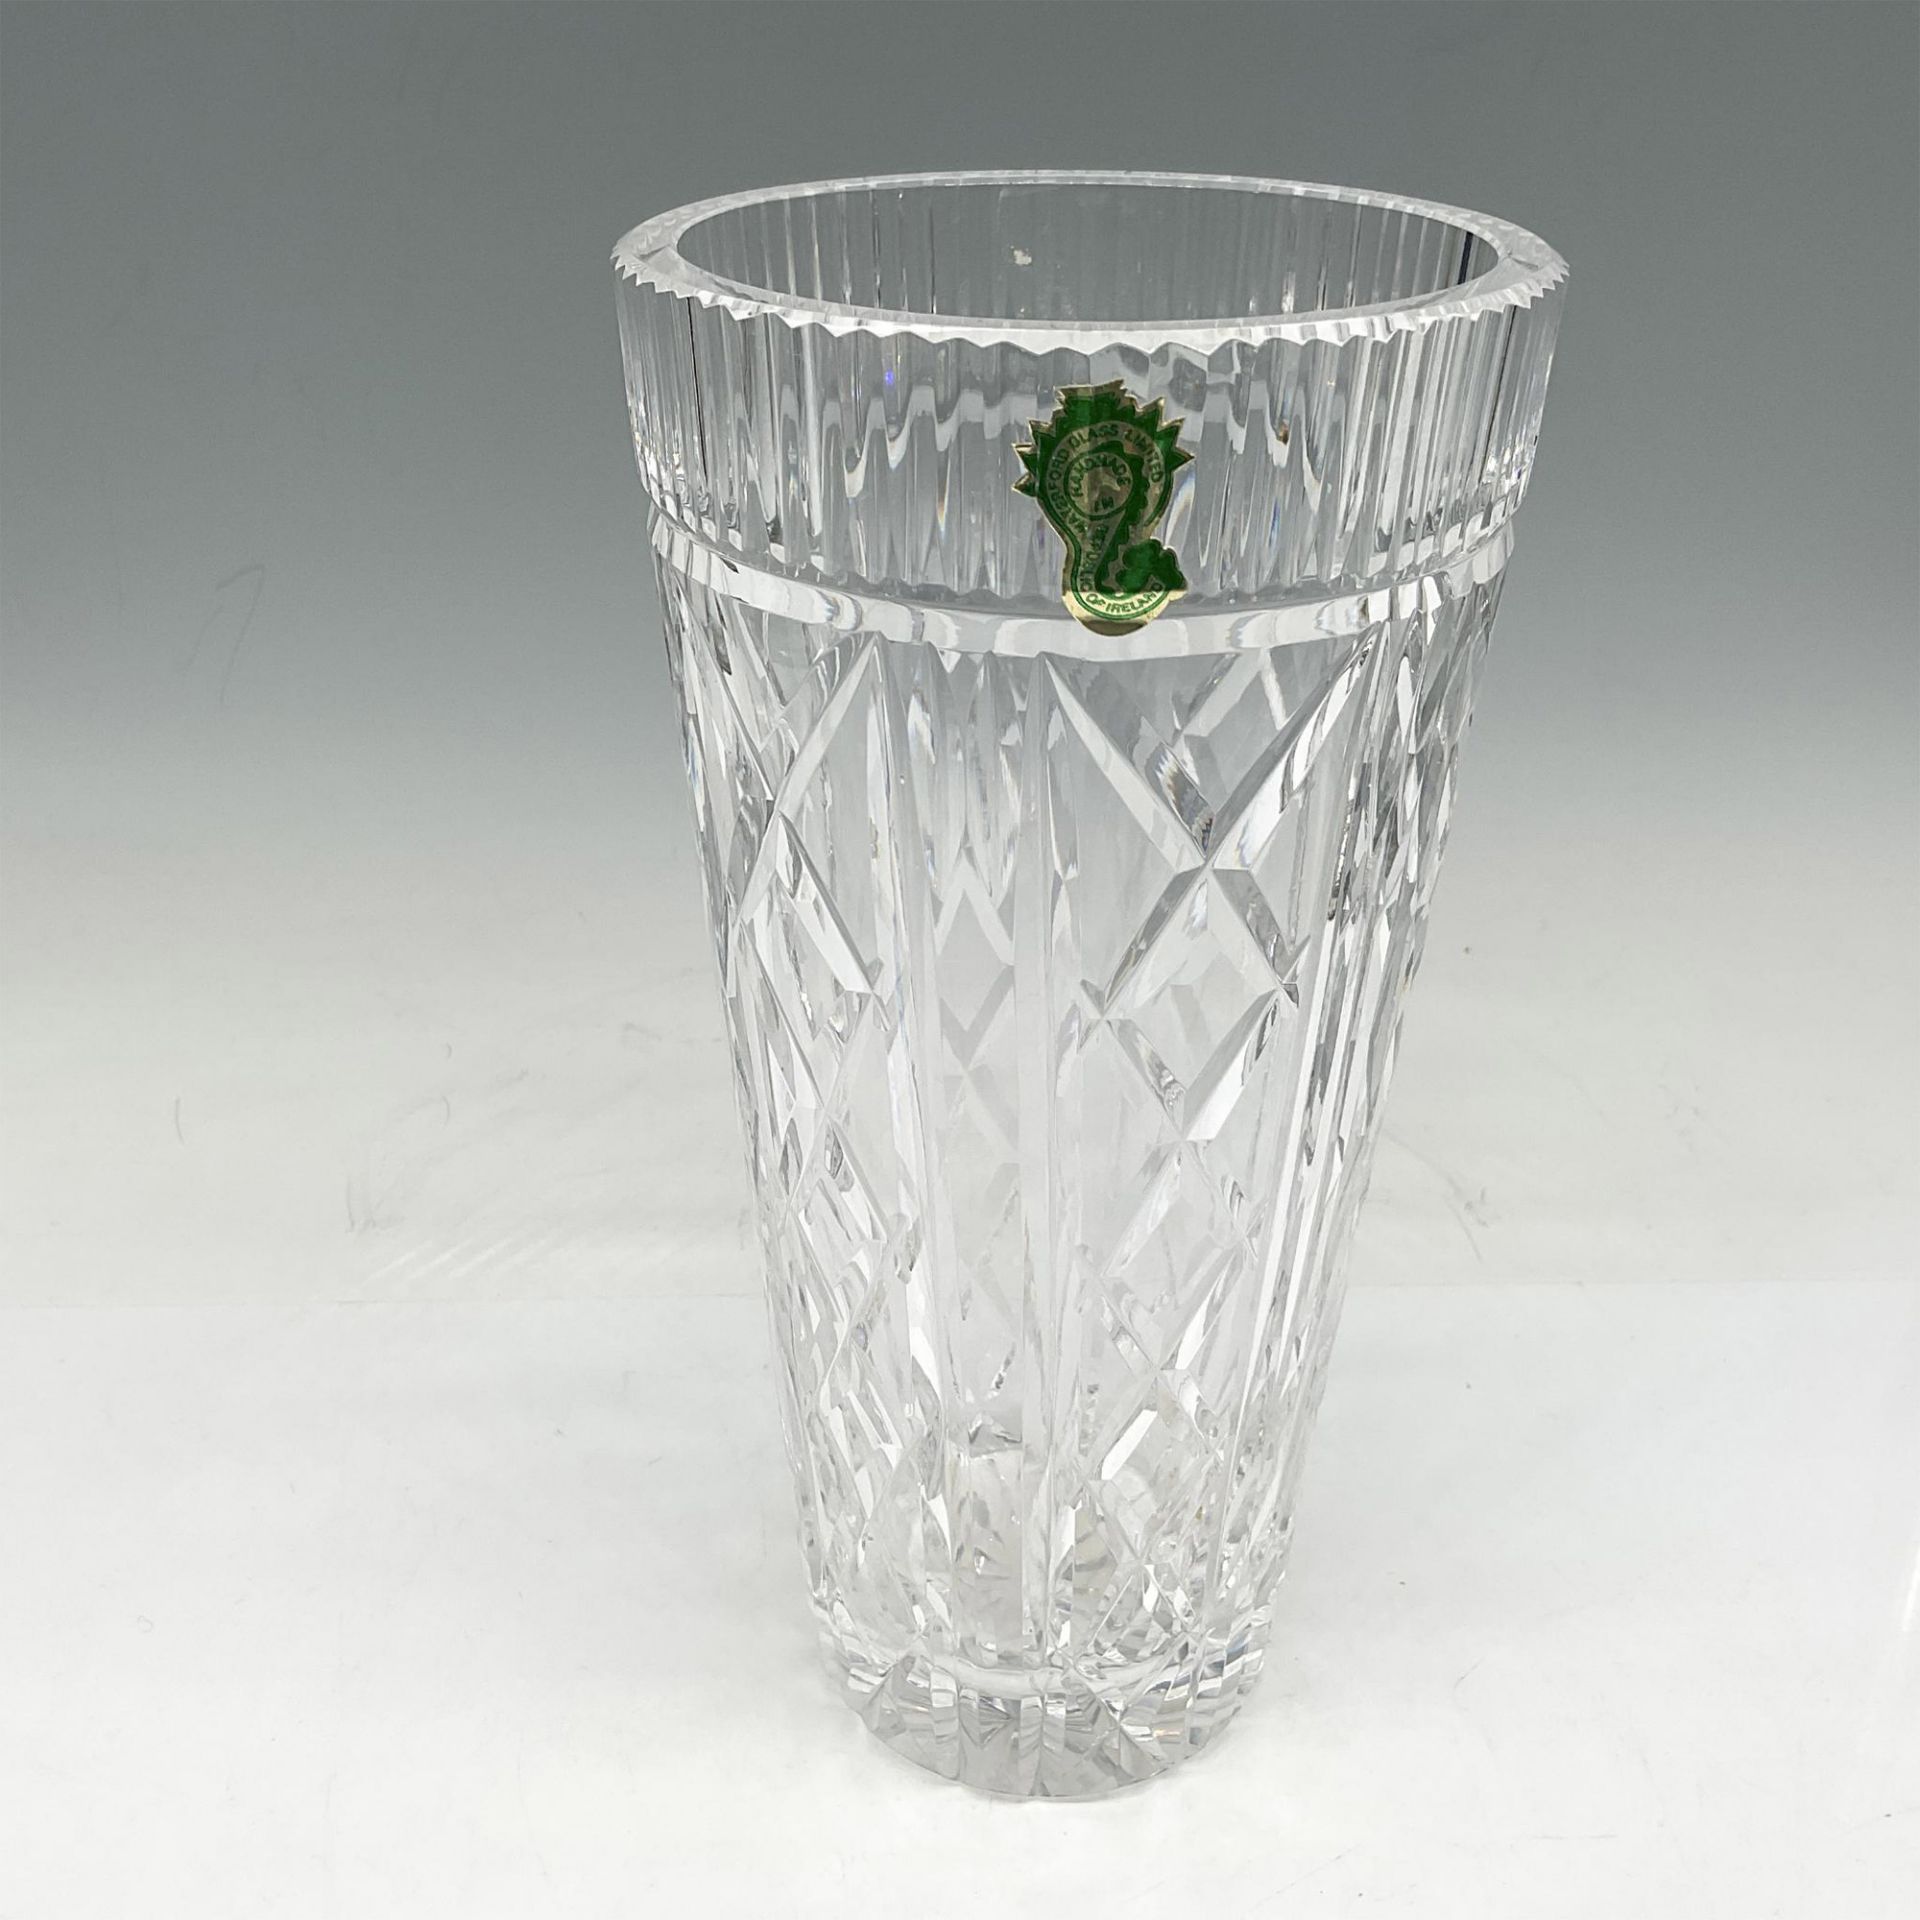 Waterford Crystal Vase 8" - Image 3 of 3